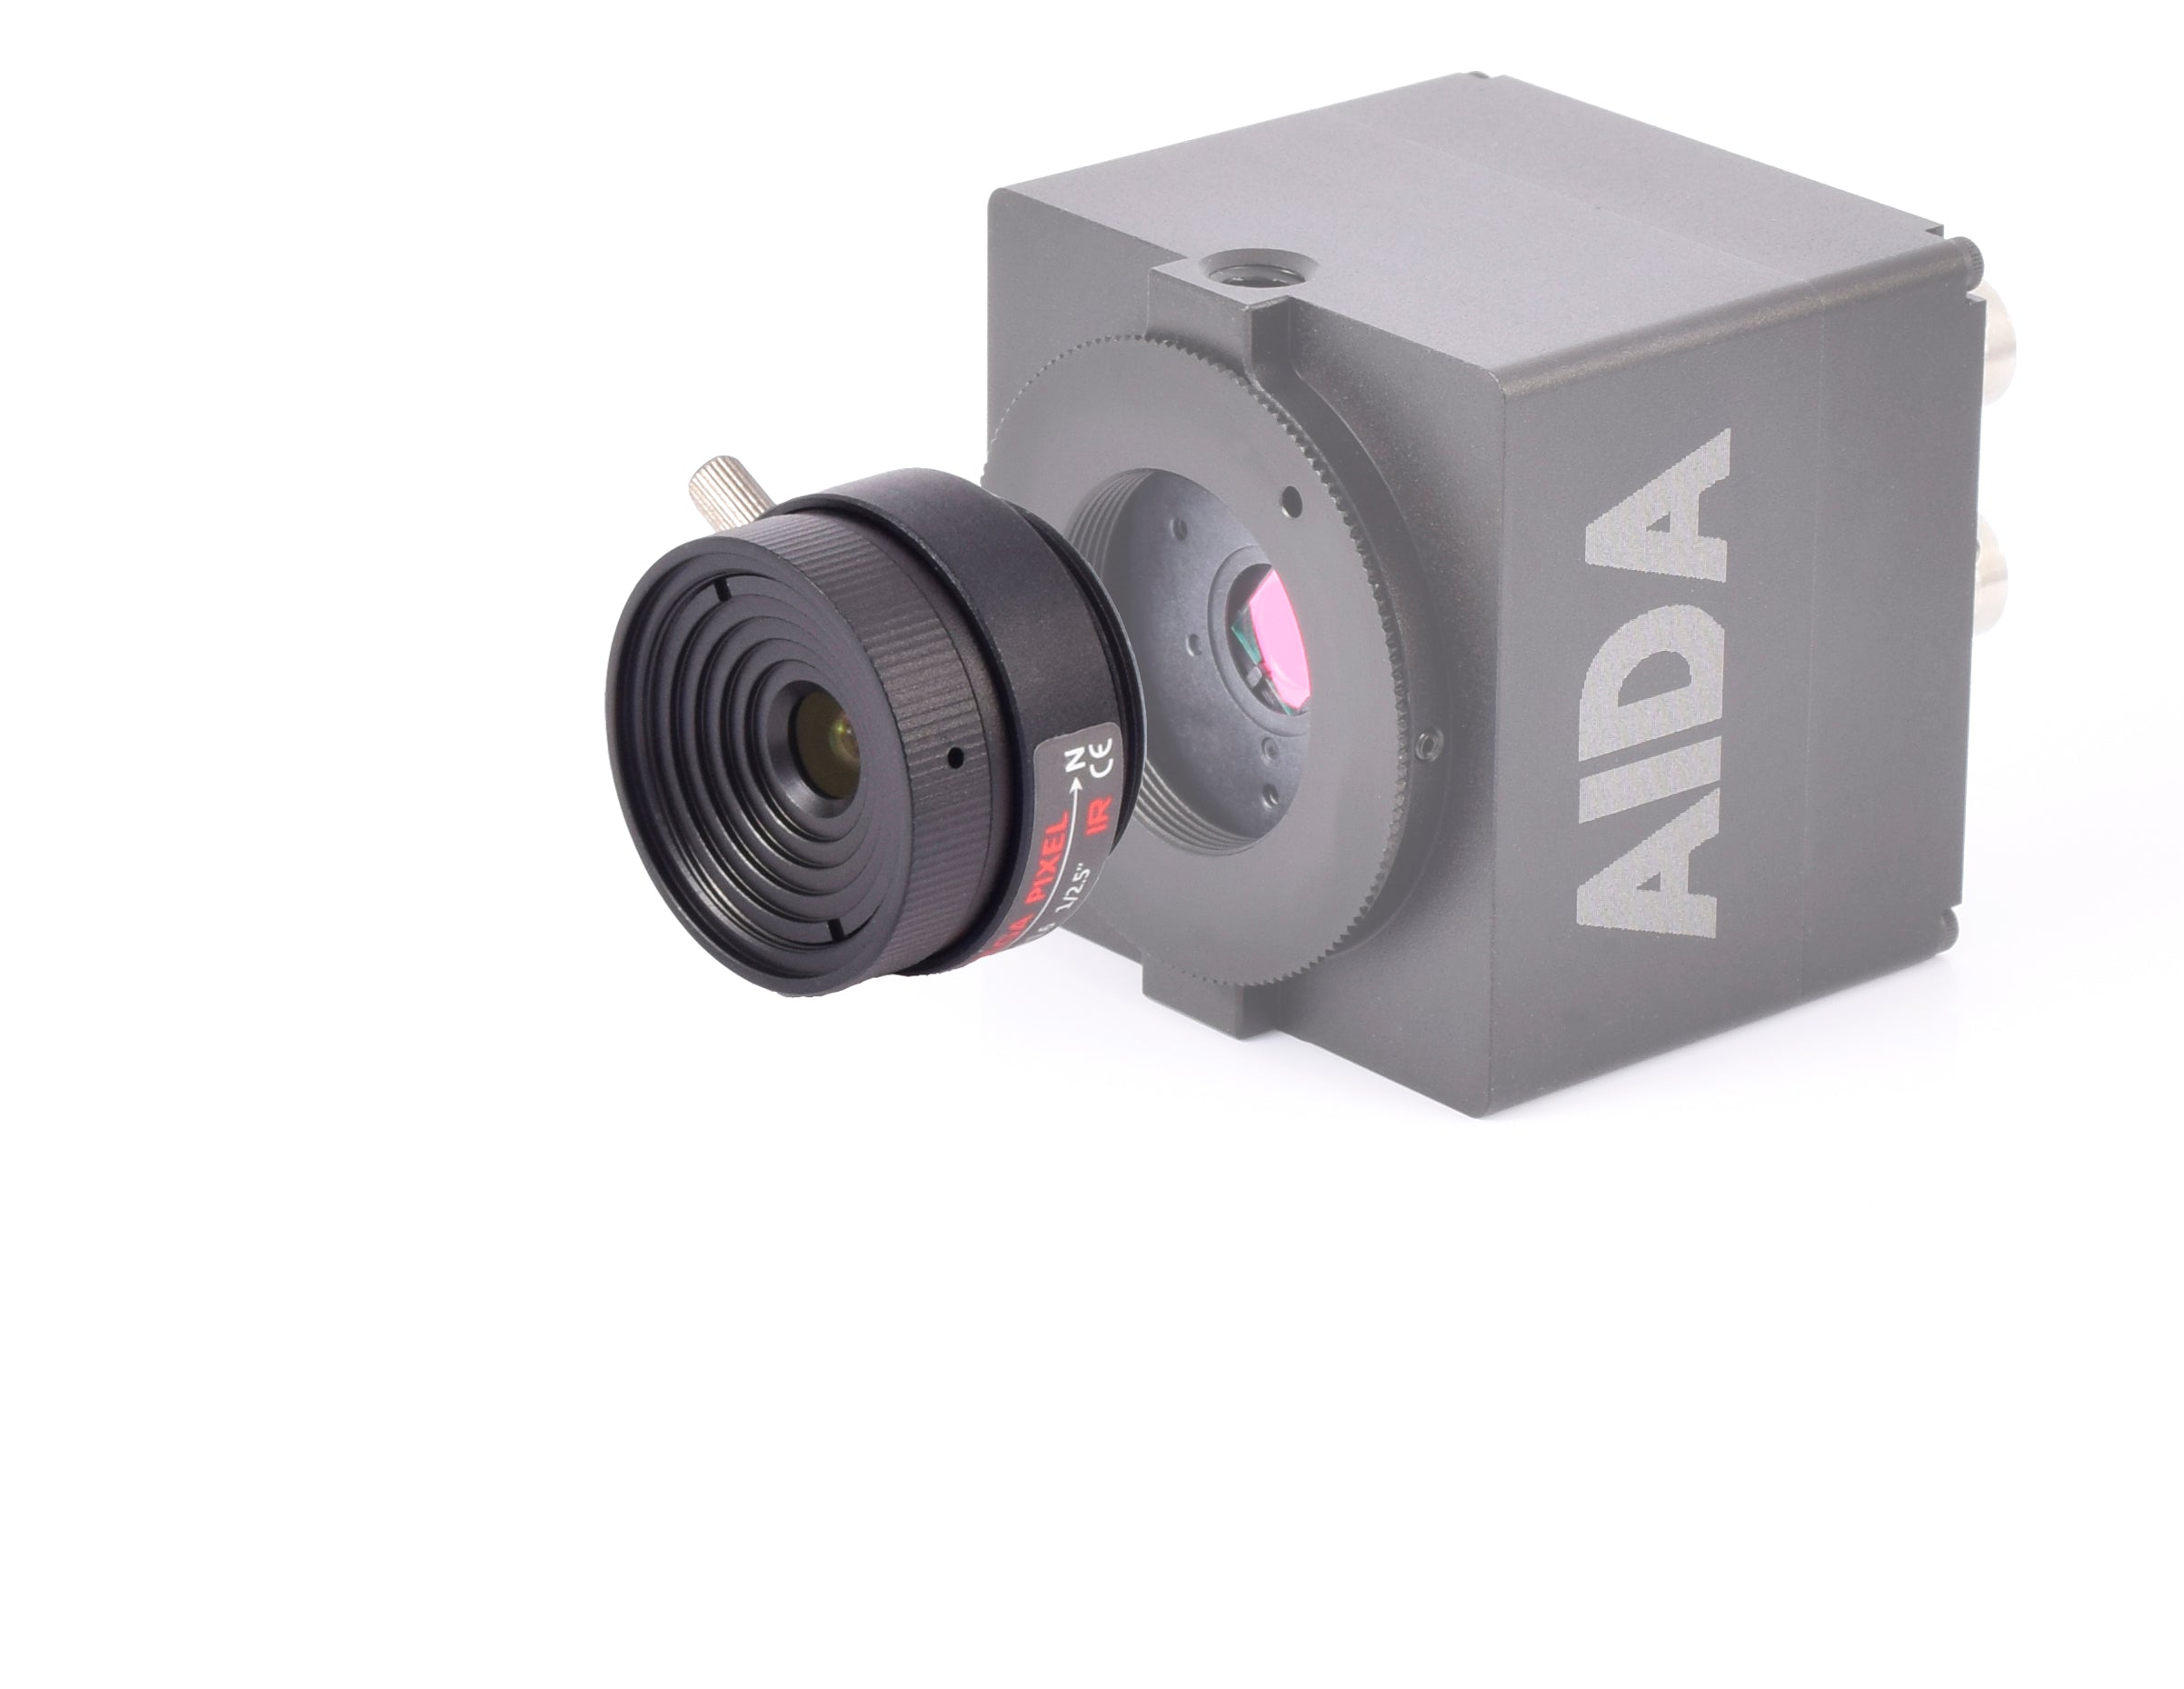 AIDA Imaging CS Mount 6mm Fixed Focal Mega-Pixel Lens